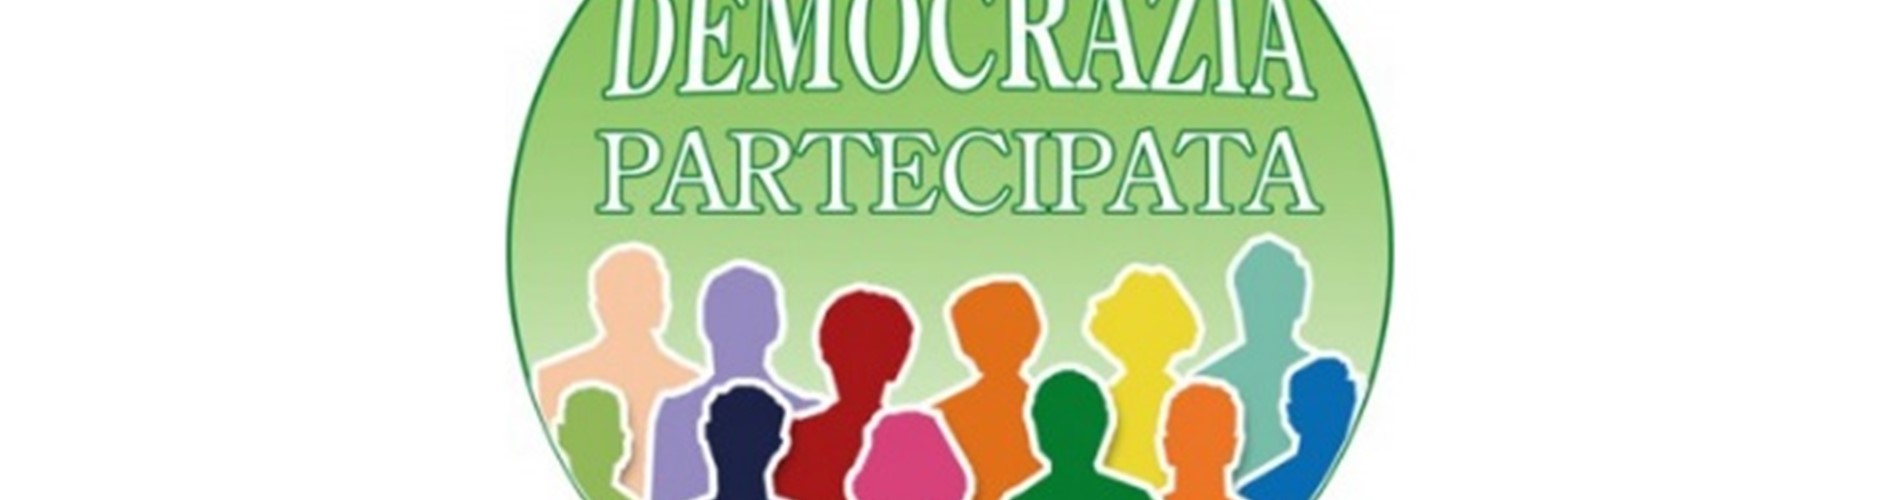 AVVISO PUBBLICO ESPRESSIONE DI PREFERENZA SUI PROGETTI DI "DEMOCRAZIA PARTECIPATA"